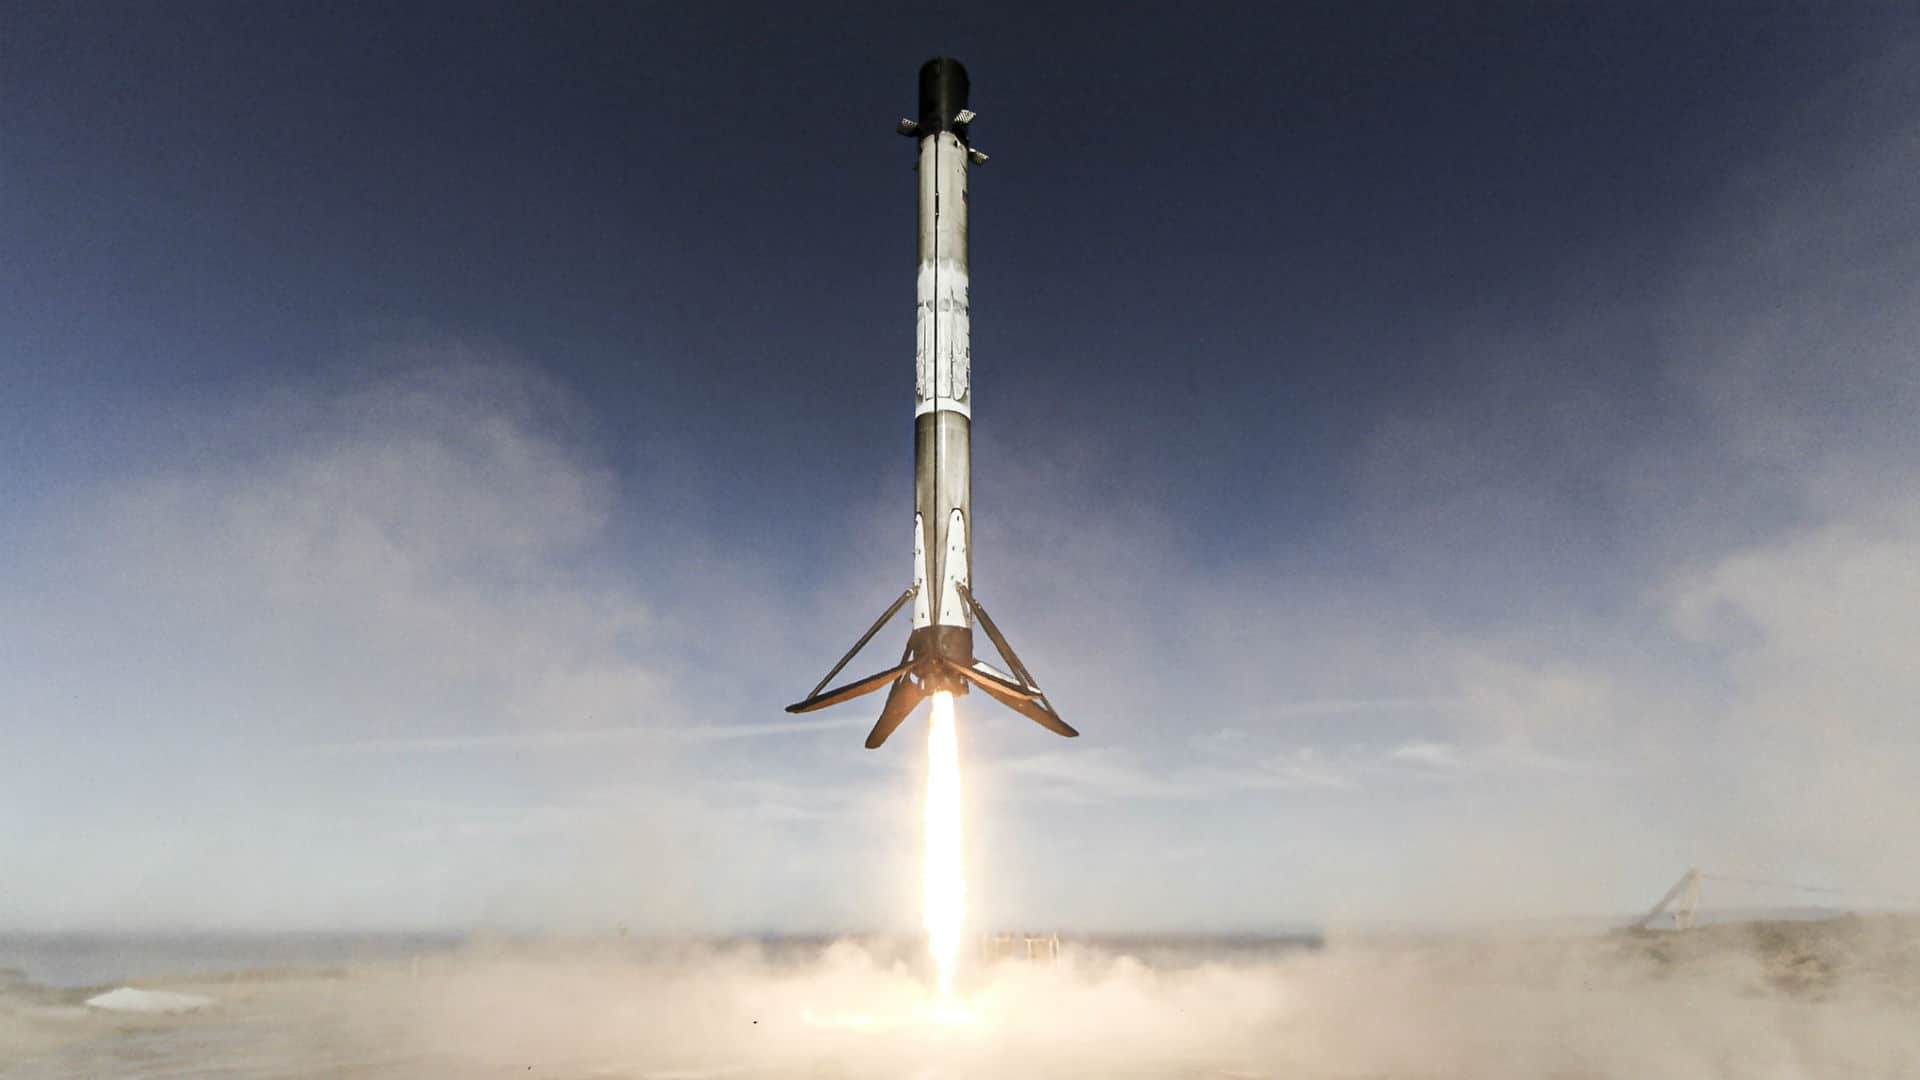 Con el Falcon 9 Block 5, SpaceX logró conseguir su récord de misiones en un año. 25 lanzamientos orbitales y 23 aterrizajes exitosos: el 80% de las misiones usaron un propulsor reutilizado. En general, SpaceX utilizó solo 10 Falcon distintos para lanzar estas 25 misiones. [SpaceX]